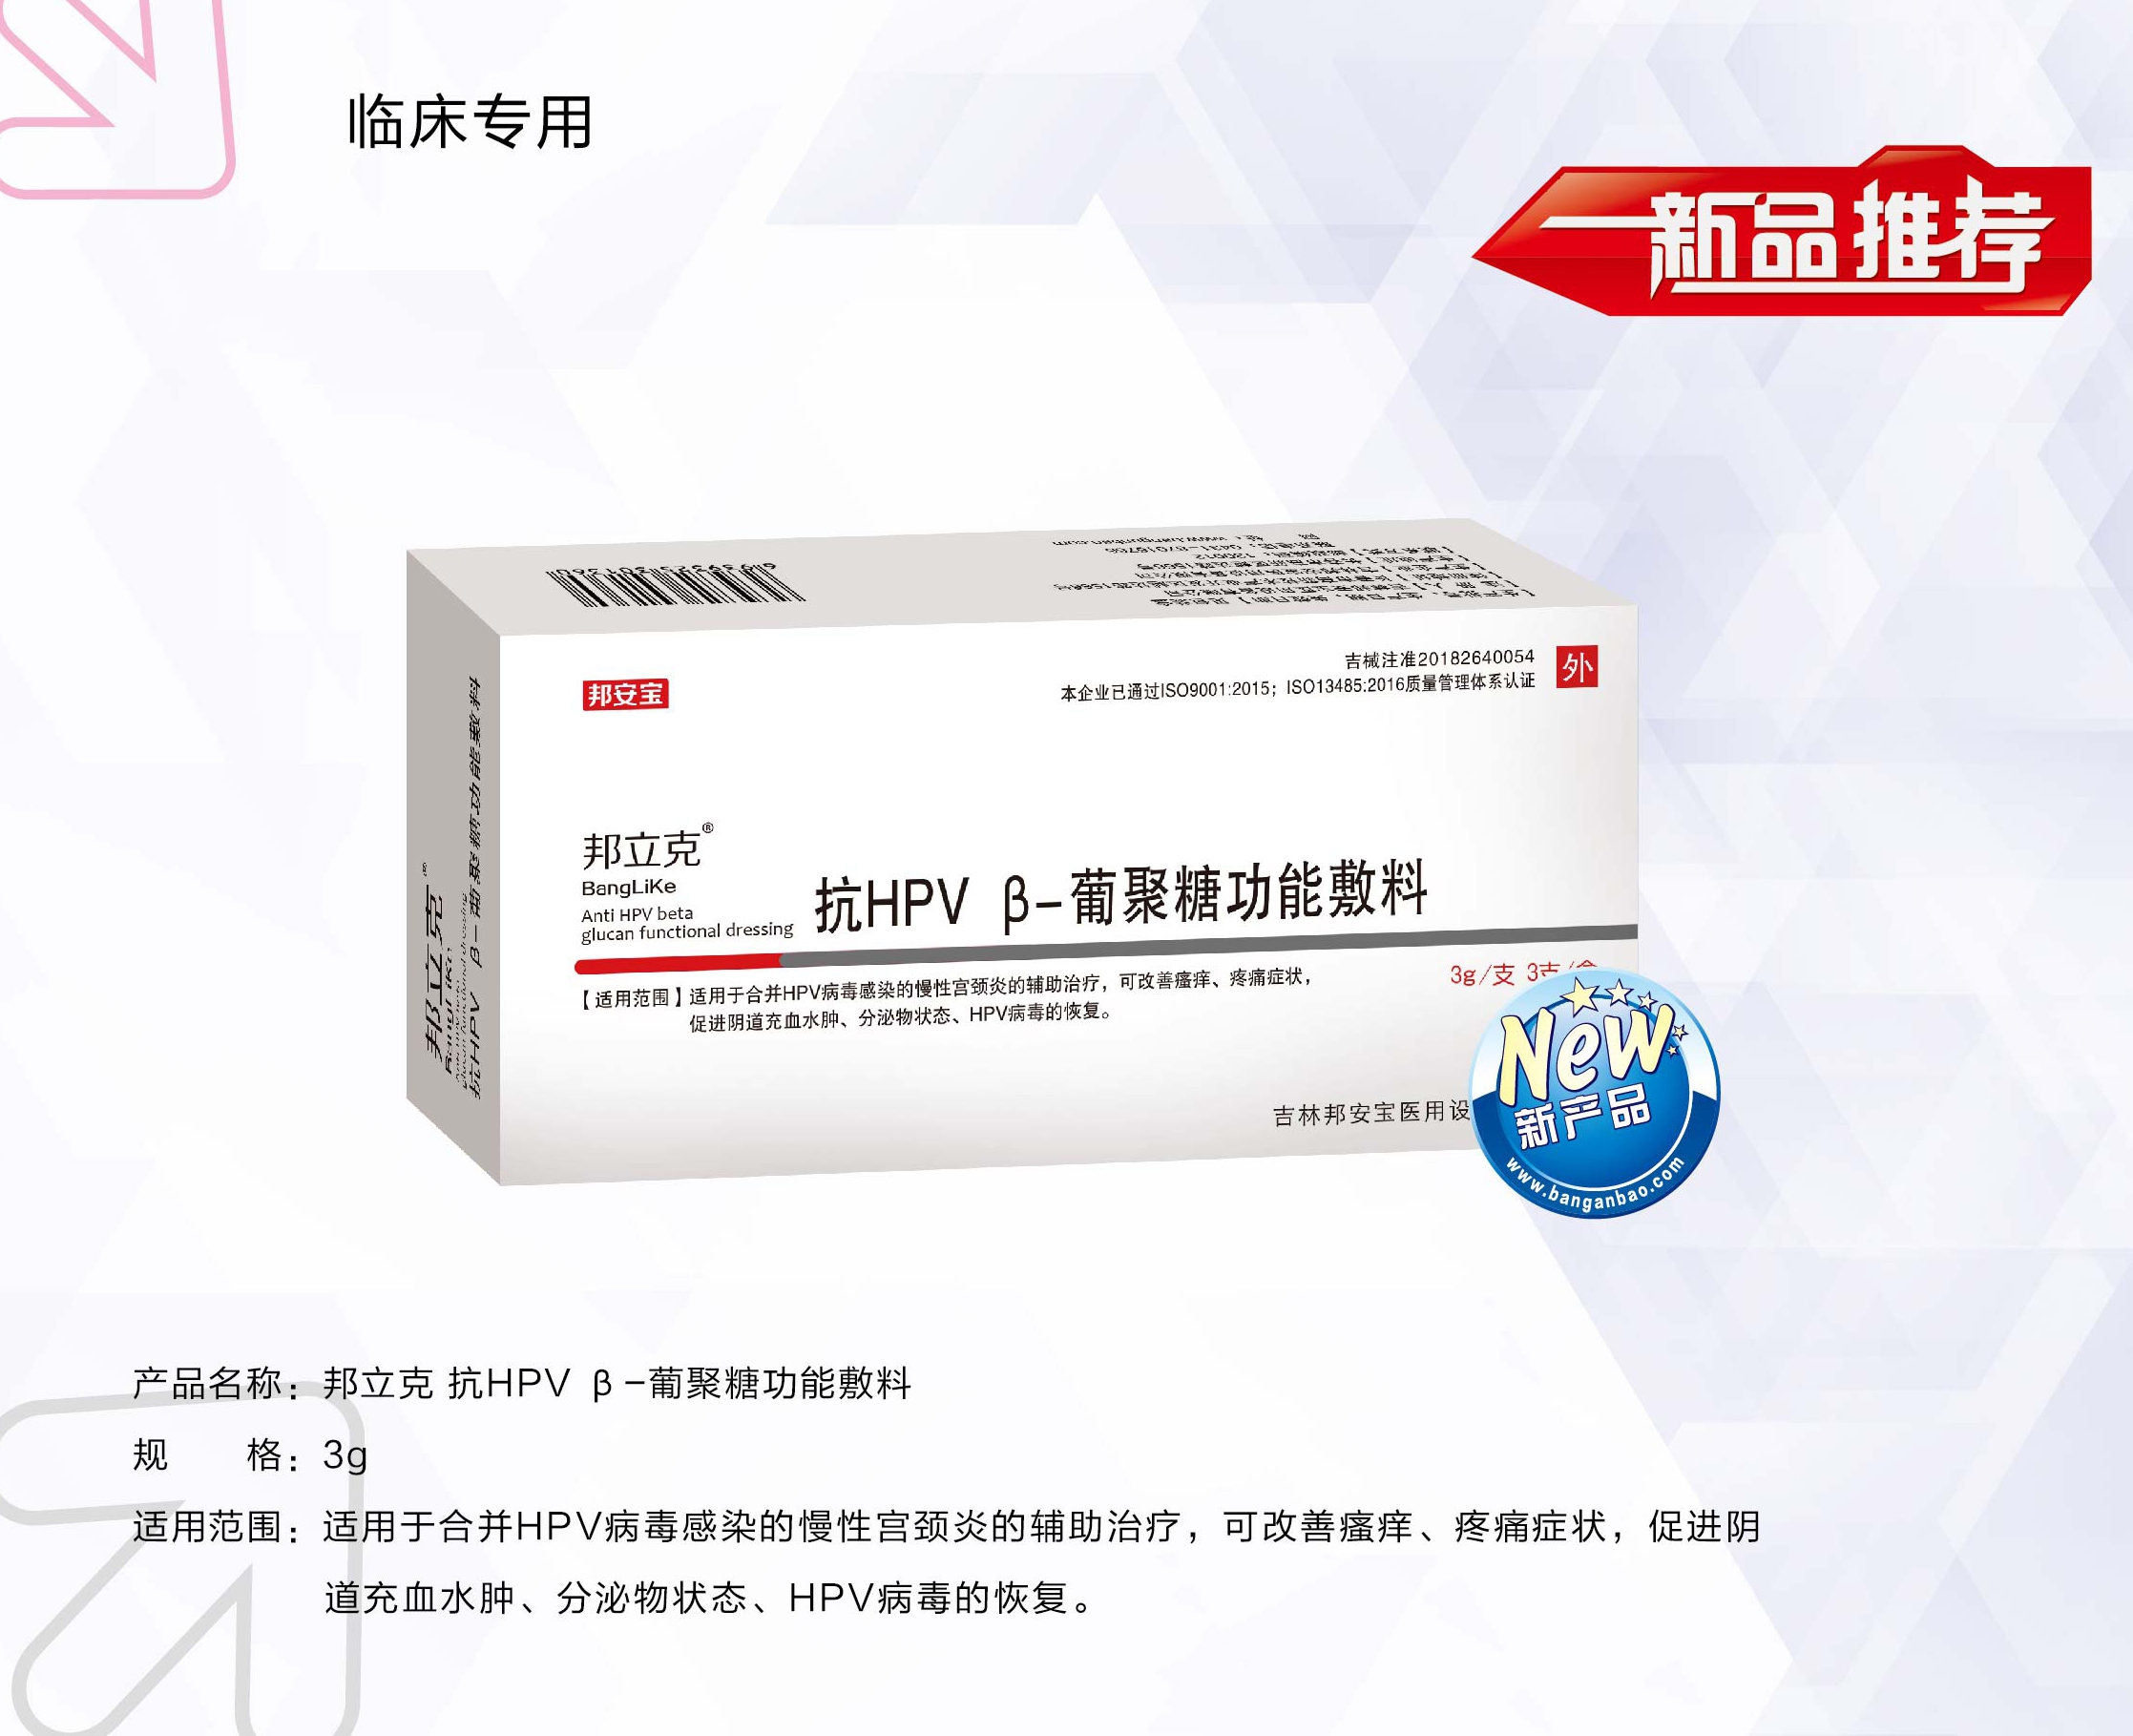 邦立克®抗HPV β-葡聚糖功能敷料 